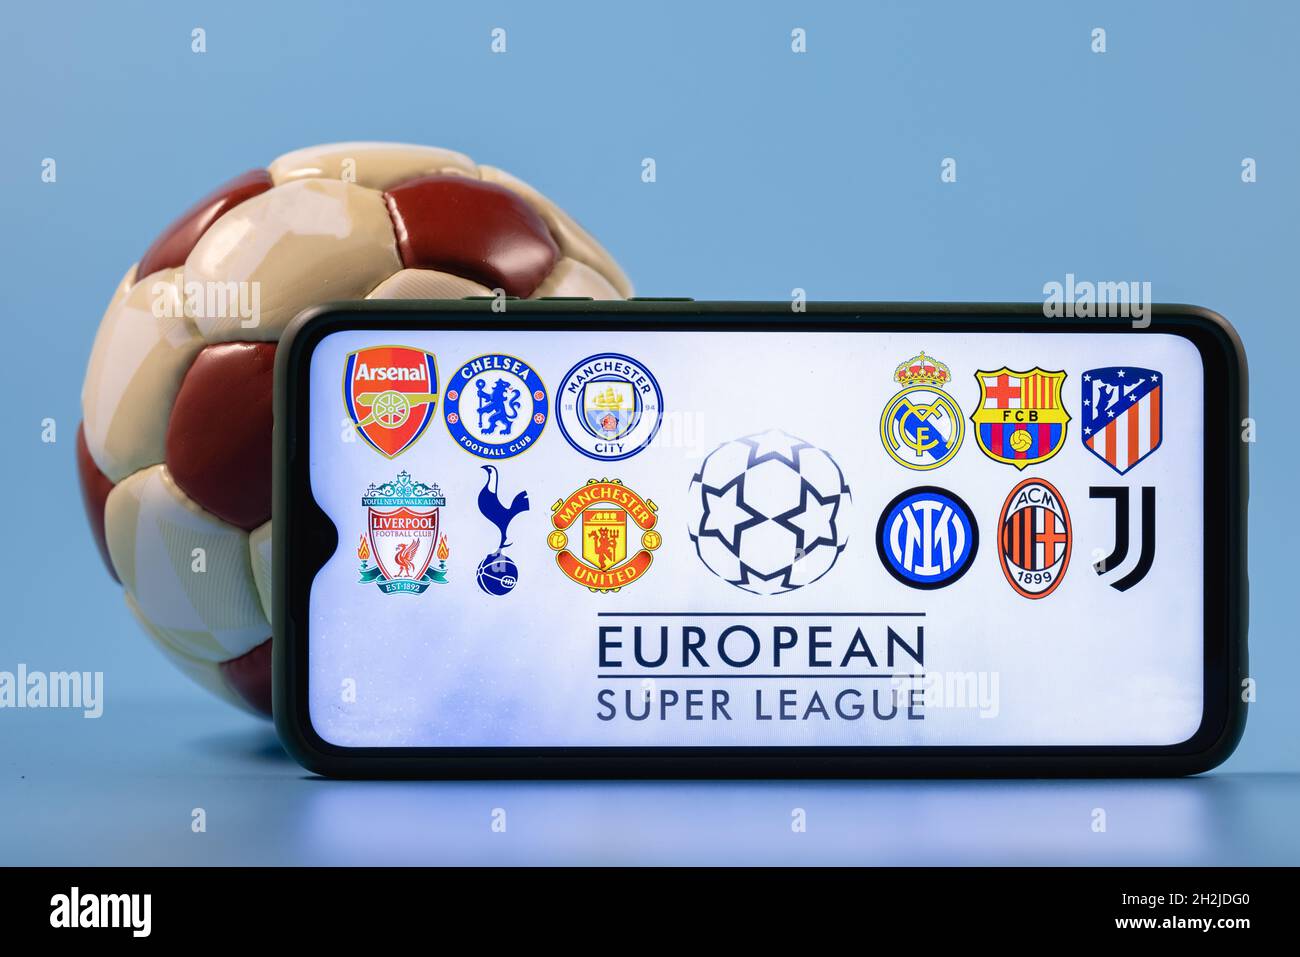 Die Super League ist ein jährlich stattfindendes Vereinsfußballwettbewerb, an dem zwanzig der besten und reichsten europäischen Fußballvereine teilnehmen. Stockfoto